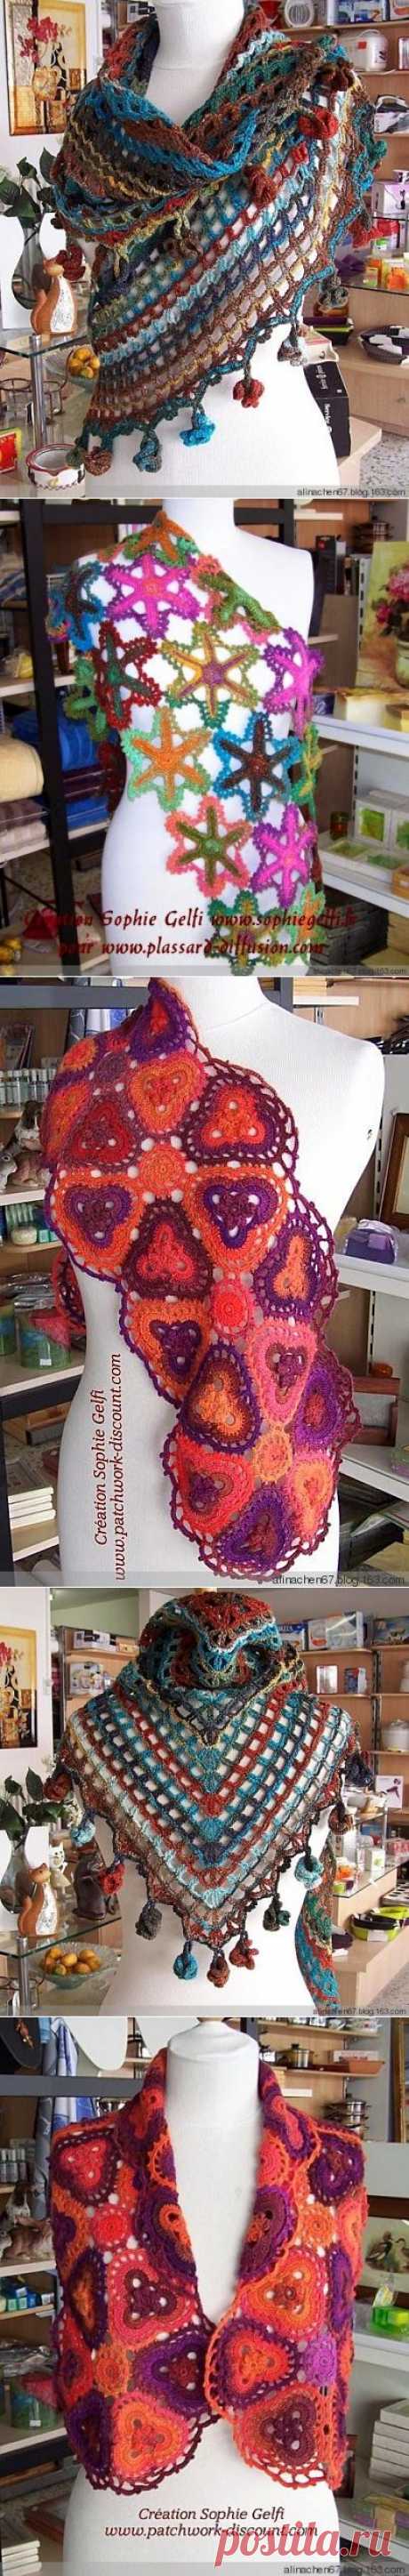 Irish crochet &amp;: Из пряжи секционного крашения